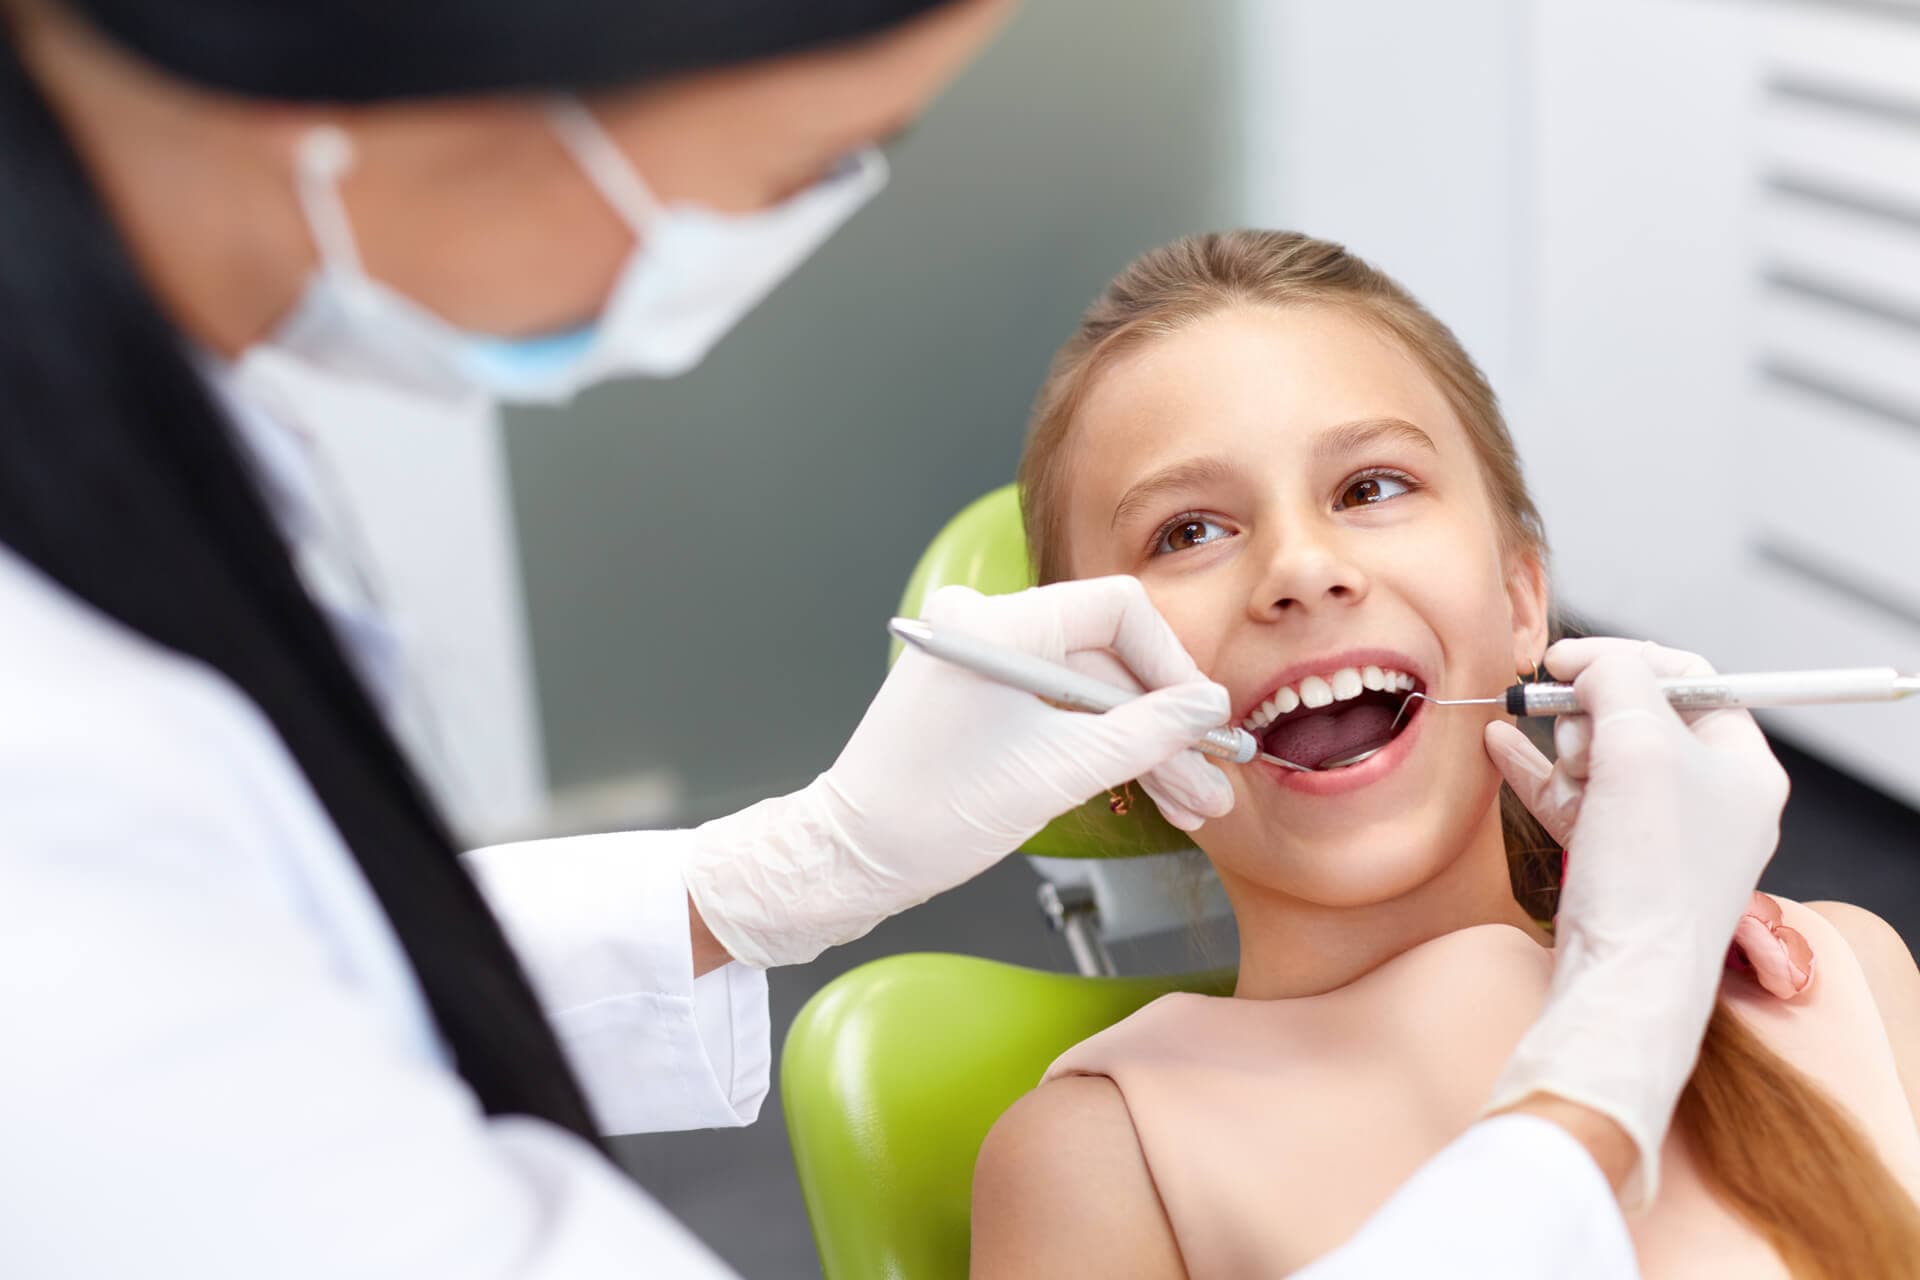 Centro Odontológico Dentine - Especialistas en odontología pediátrica en Vigo